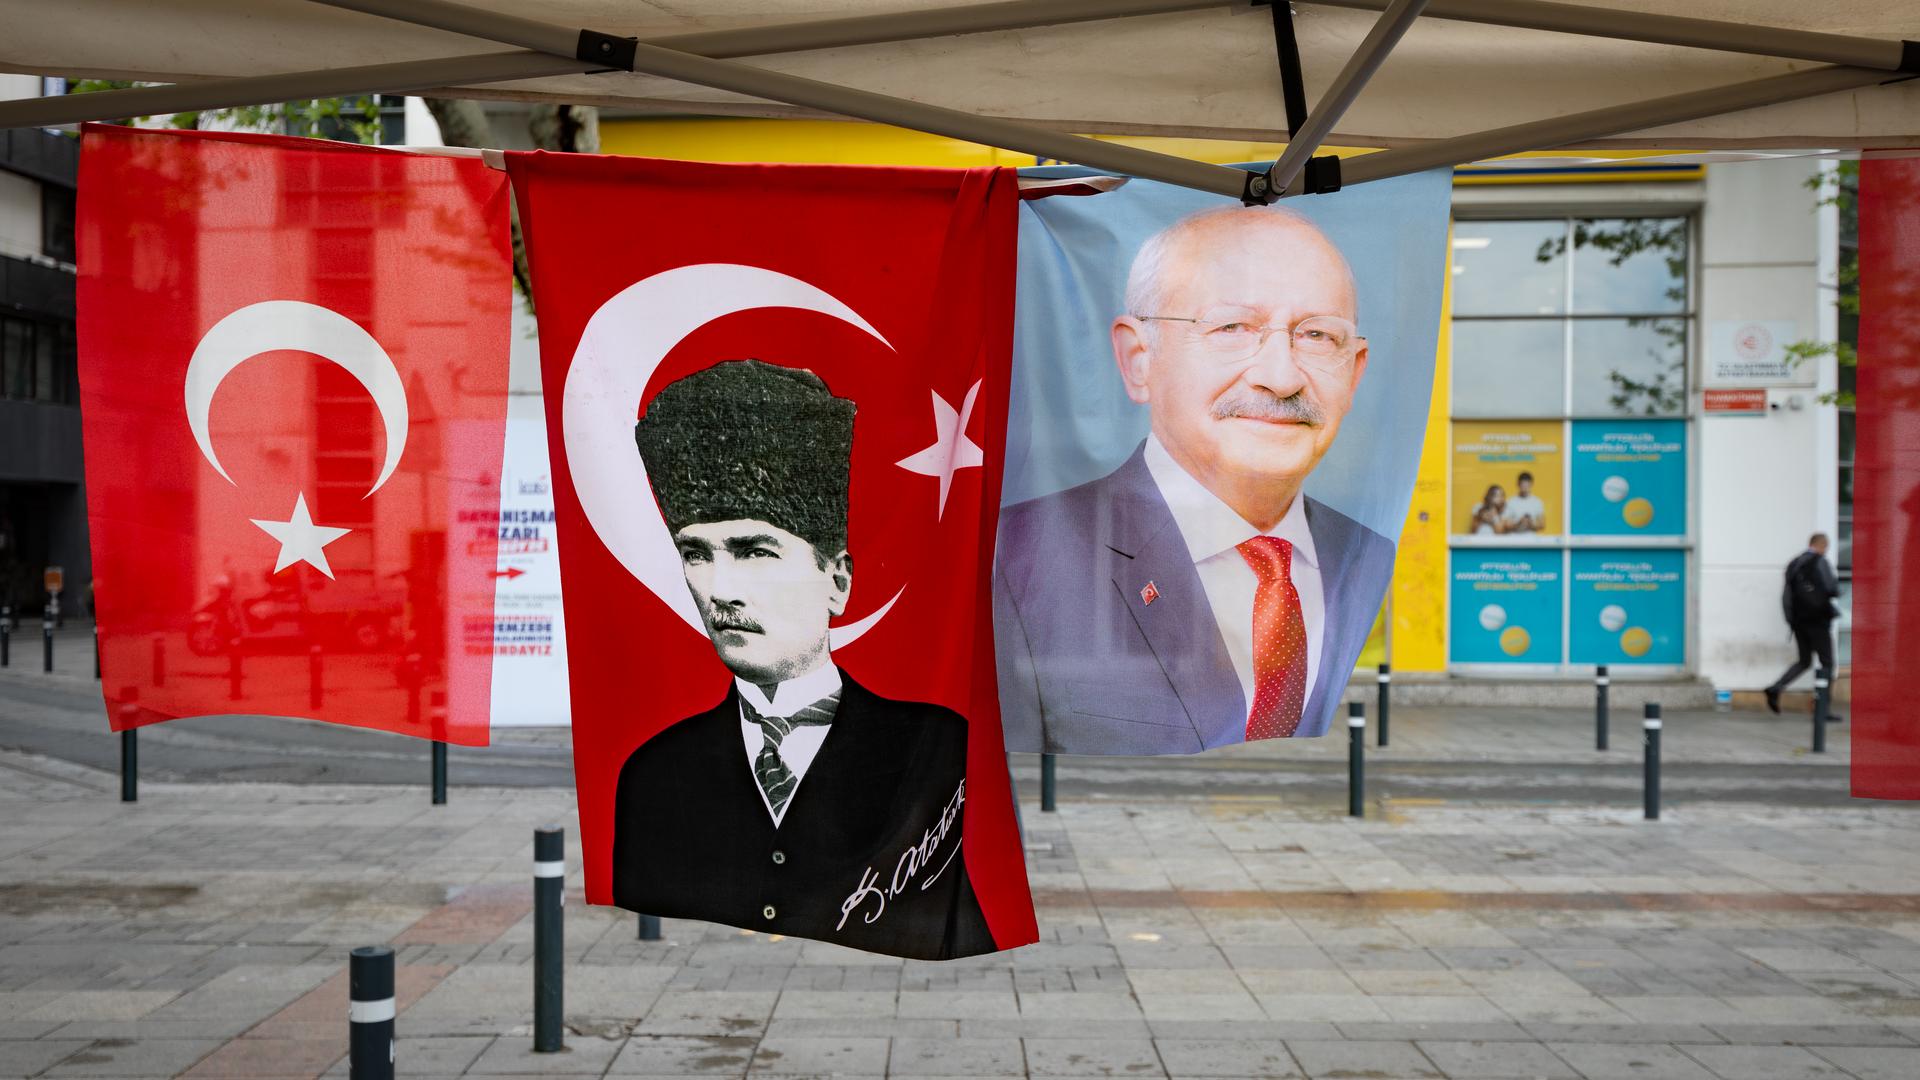 Wnętrze namiotu wyborczego opozycji w Kadıköy. Zdjęcia Kemala Kılıçdaroğlu często pojawiają się obok fotografii ojca założyciela Republiki Mustafy Kemala -  Atatürka